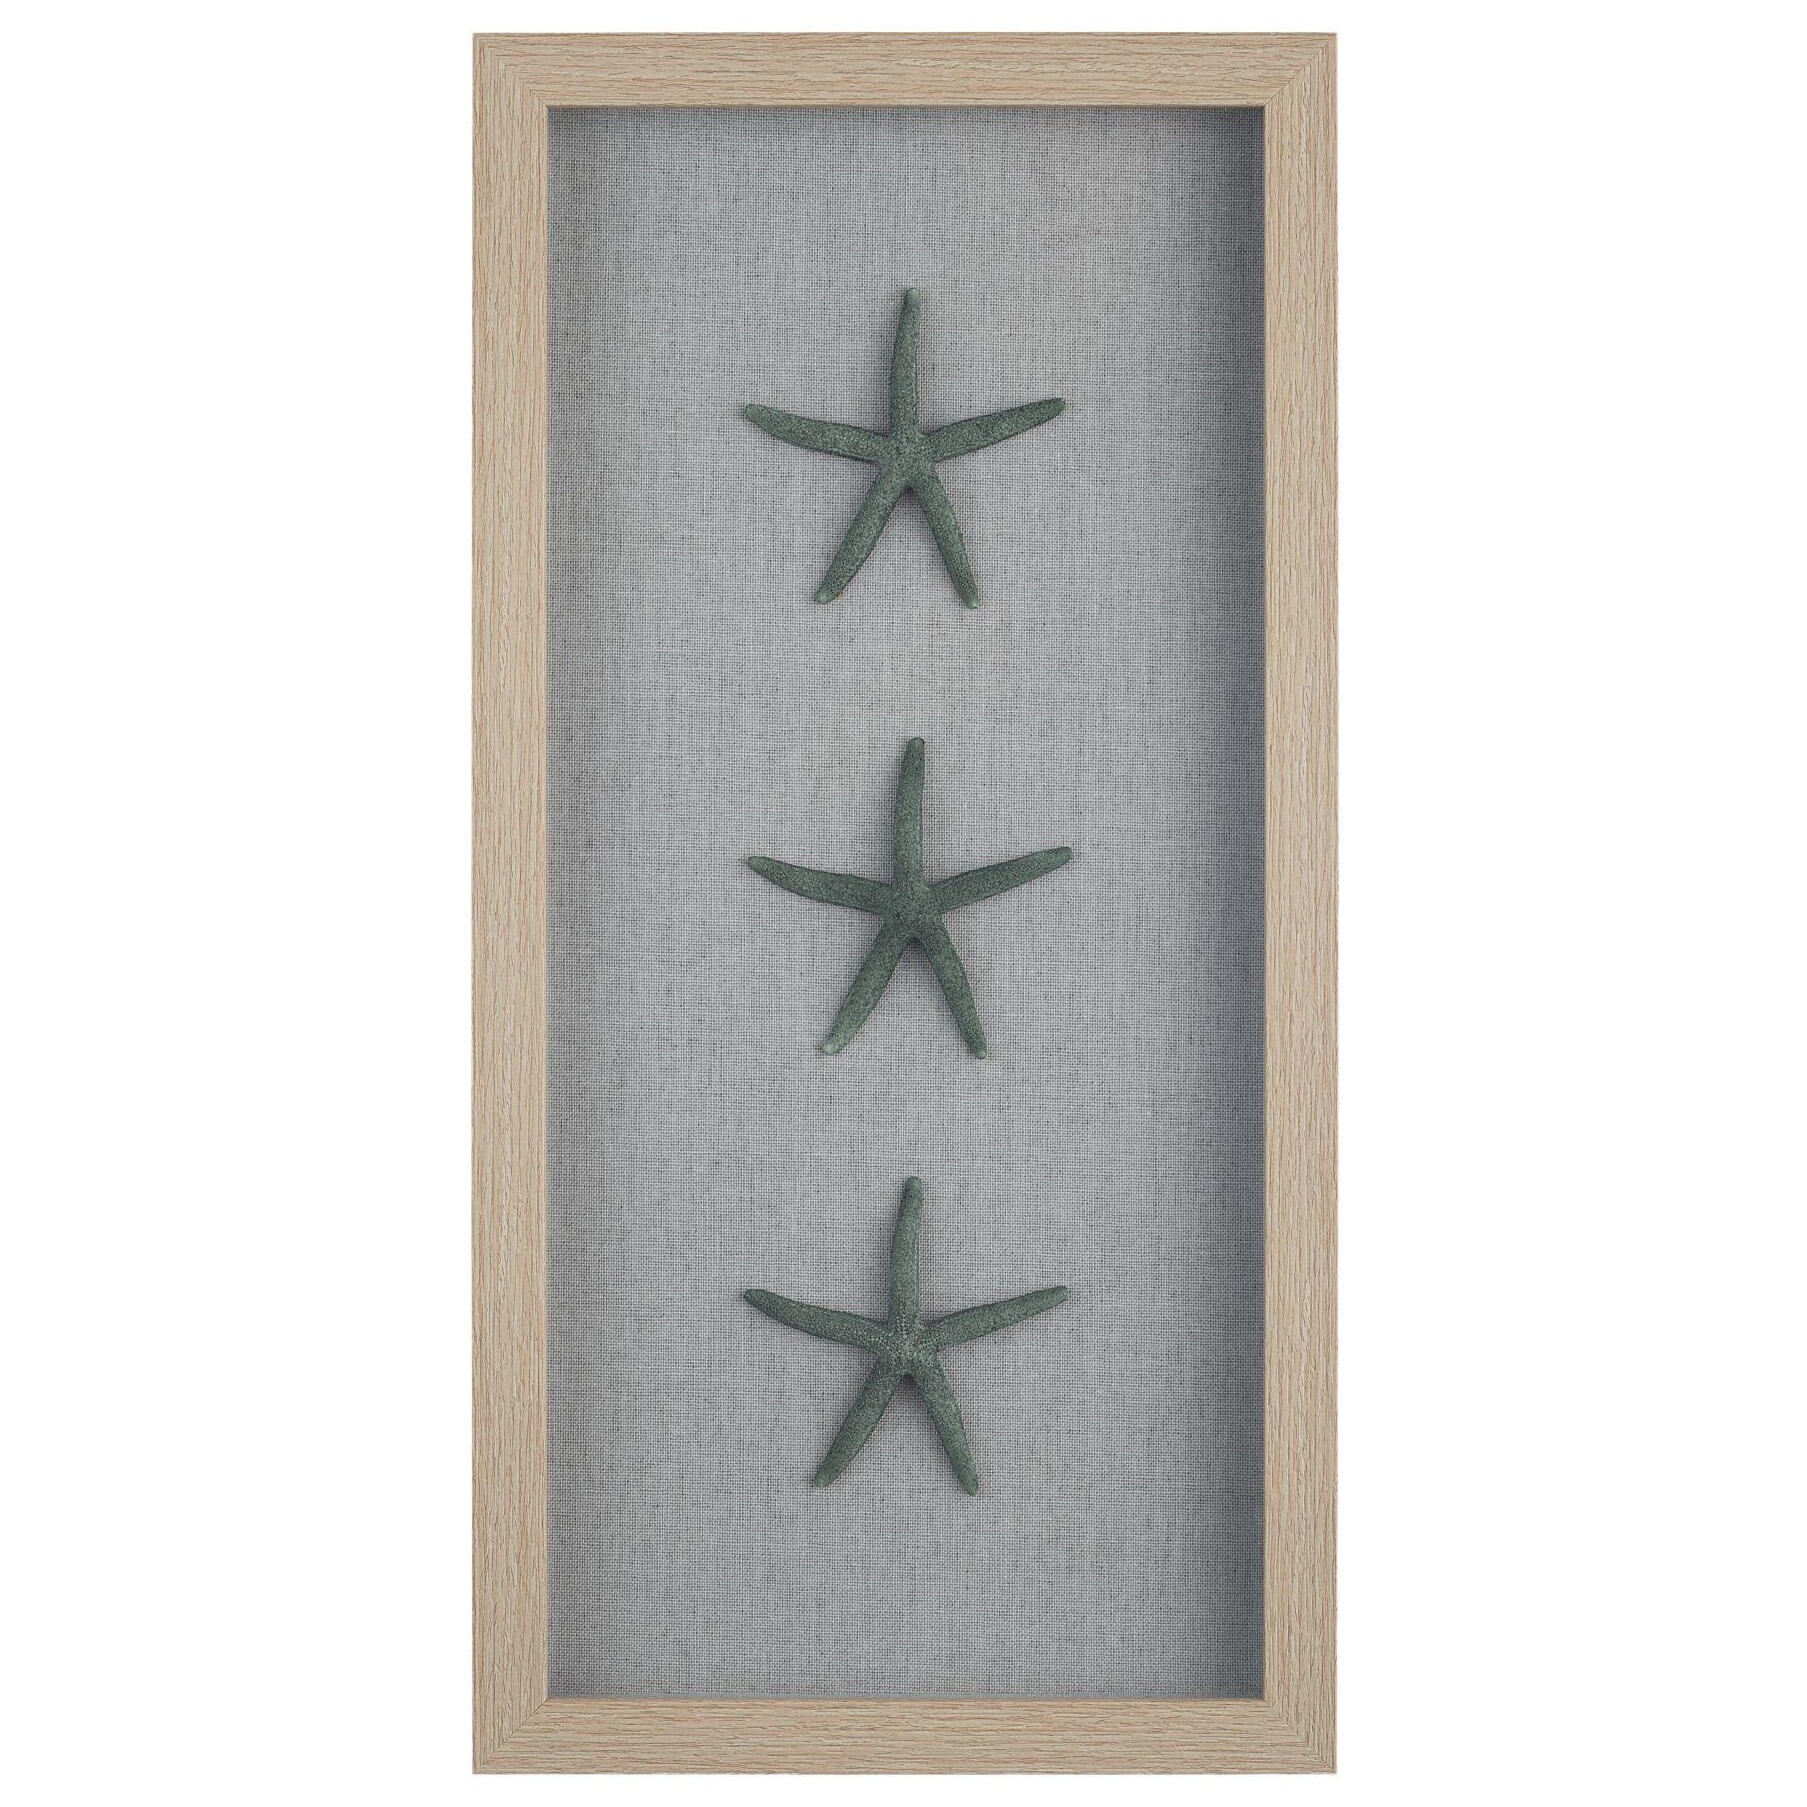 Картина шэдоубокс с искусственными морскими звездами 25х50 см бежевая, зеленая 83036